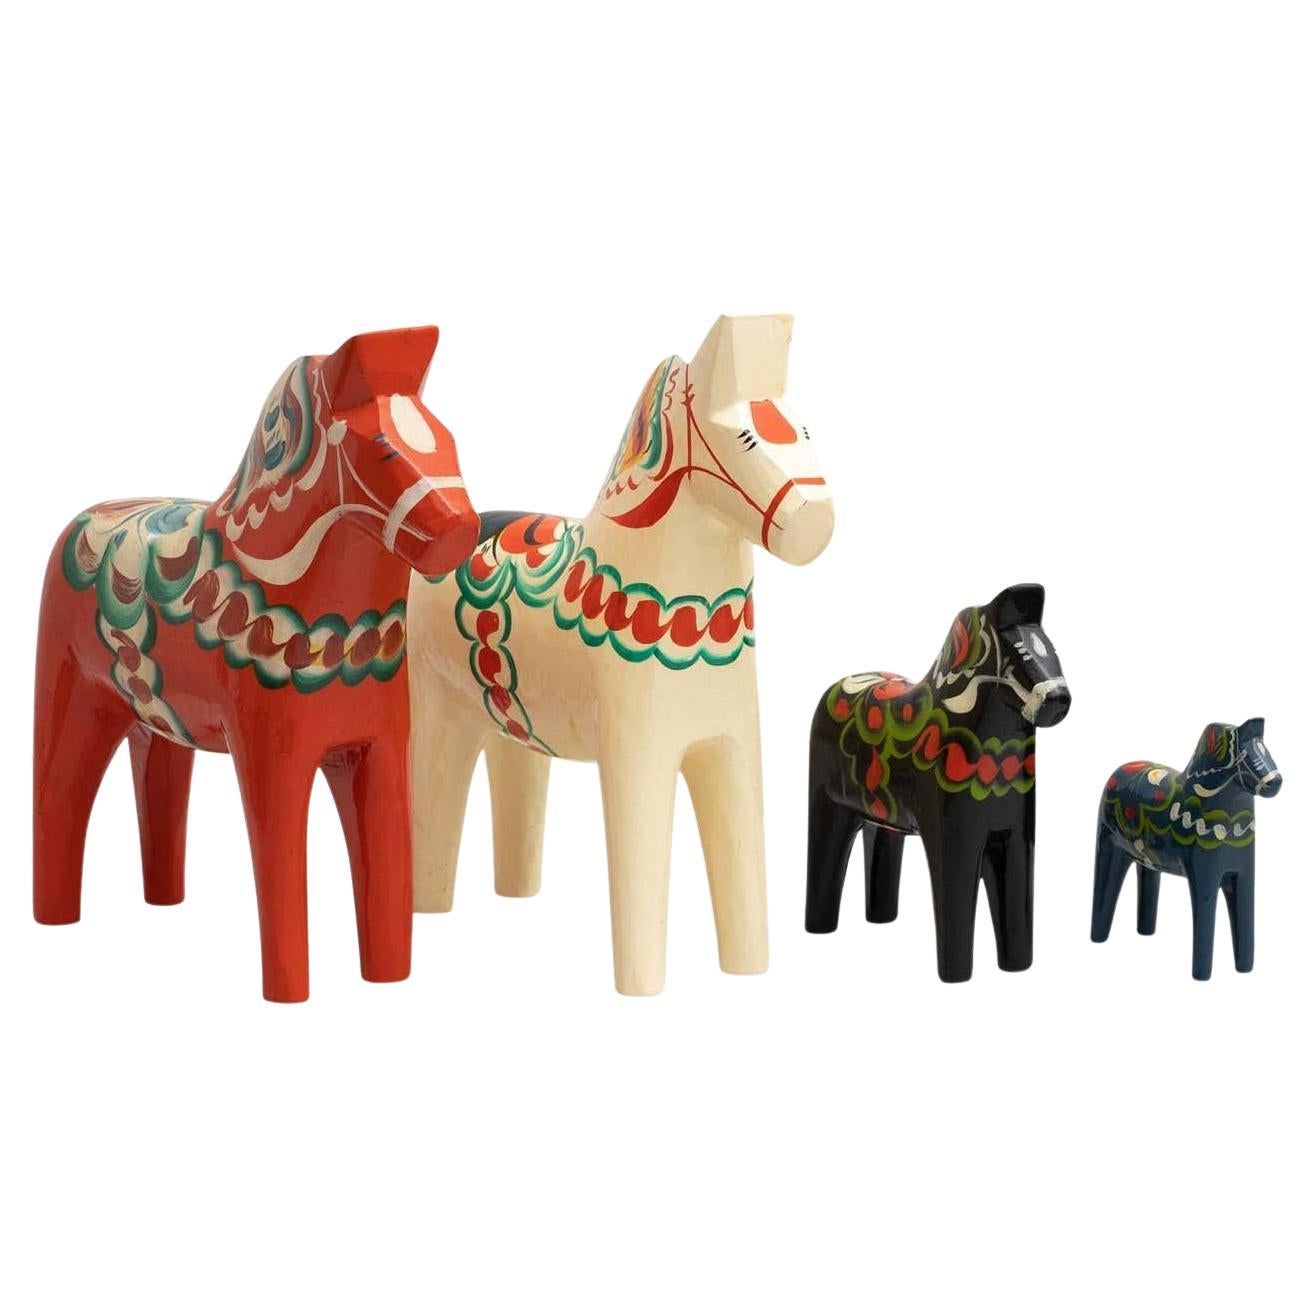 Ensemble de 4 jouets de cheval Dala en bois folklorique suédois, vers 1960